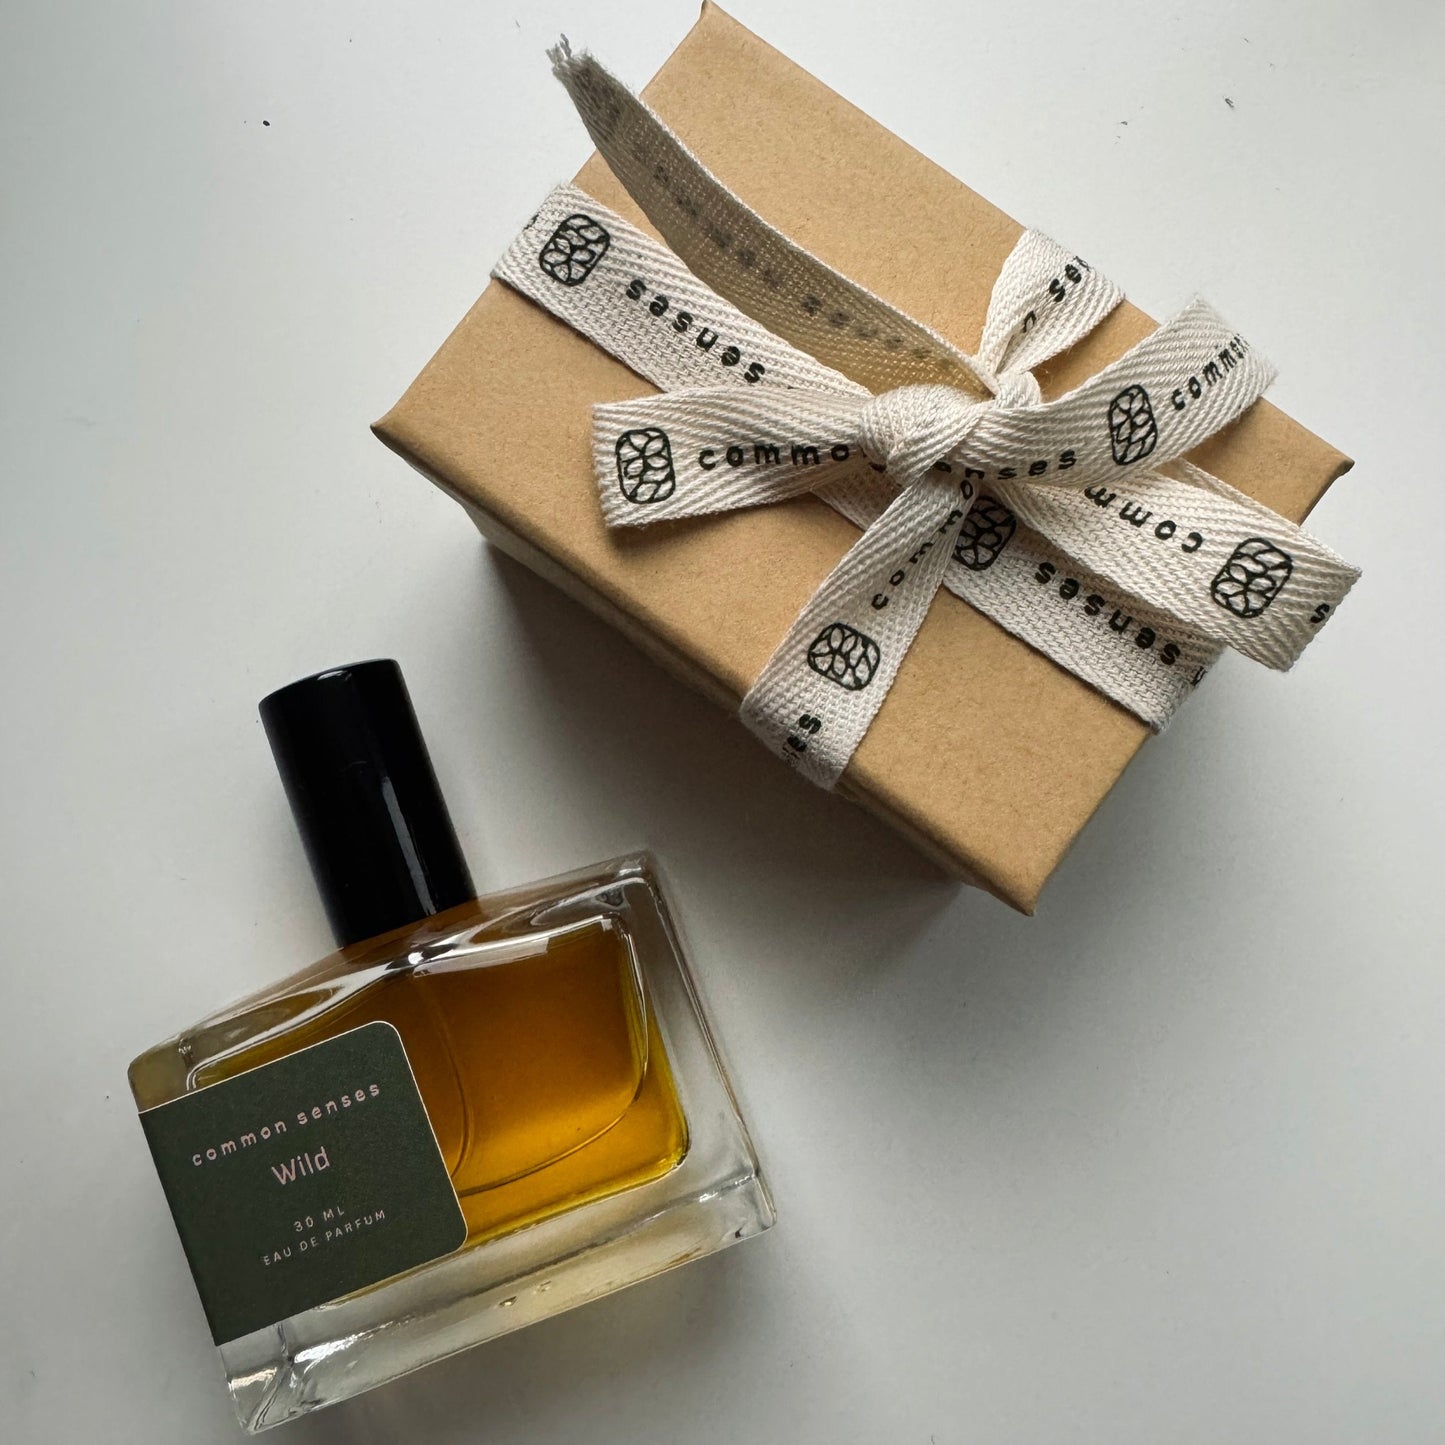 Wild Eau de Parfum by Common 5enses, in a 30 mL bottle